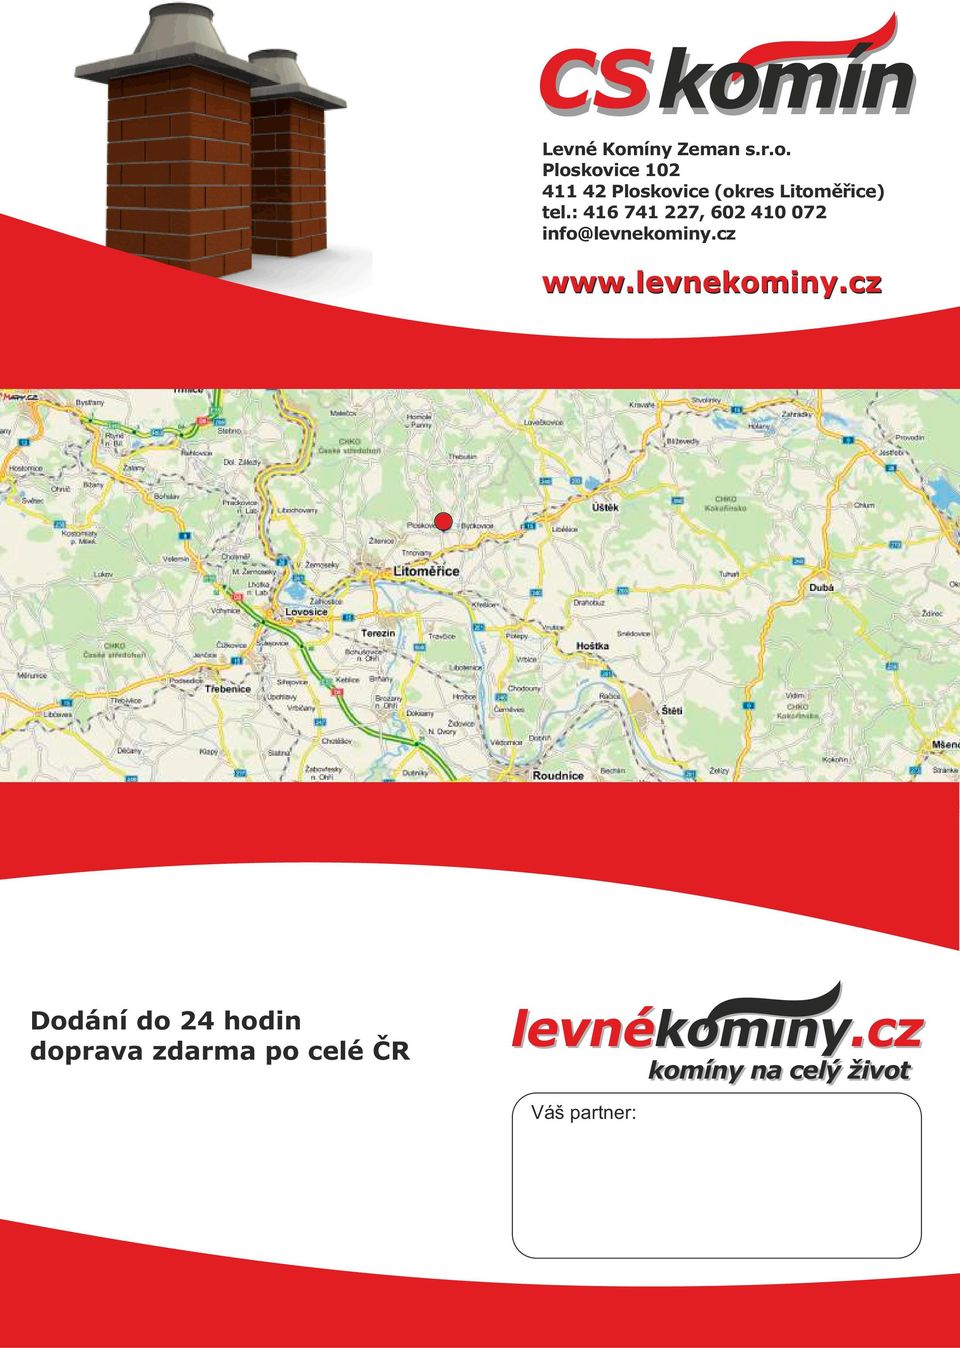 : 416 741 227, 602 410 072 info@levnekominy.cz www.